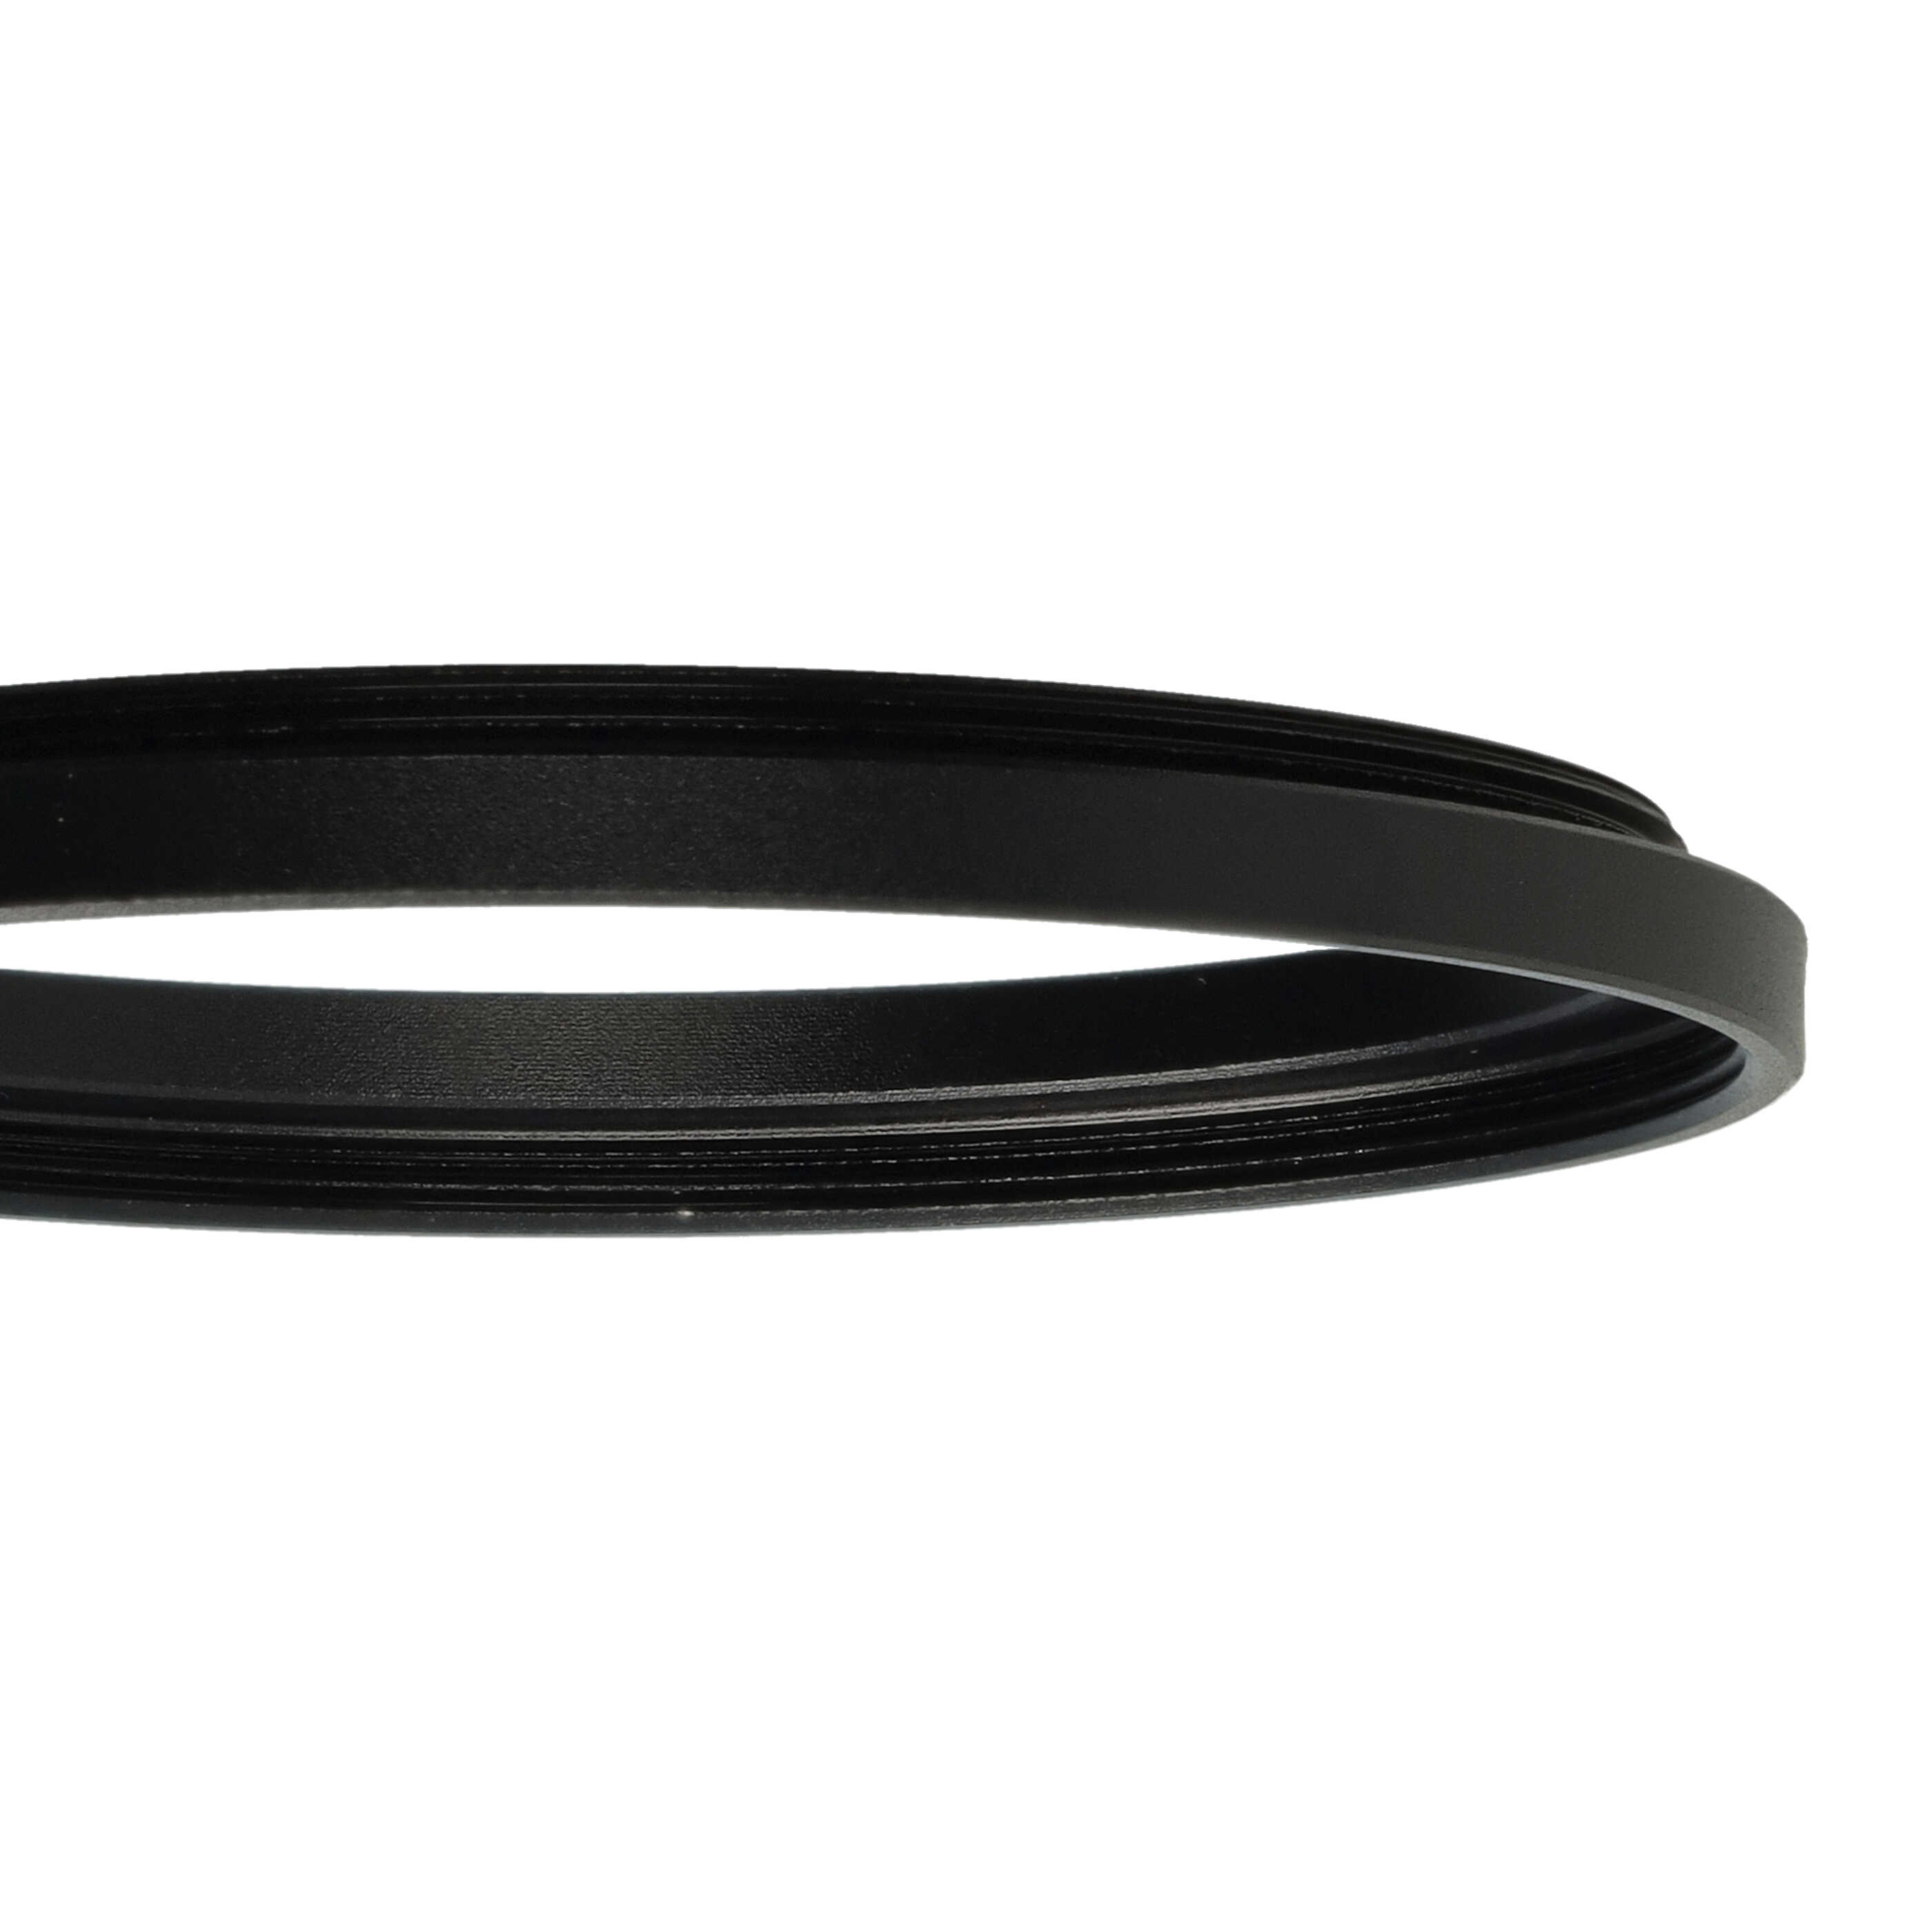 Step-Up-Ring Adapter 55 mm auf 58 mm passend für diverse Kamera-Objektive - Filteradapter